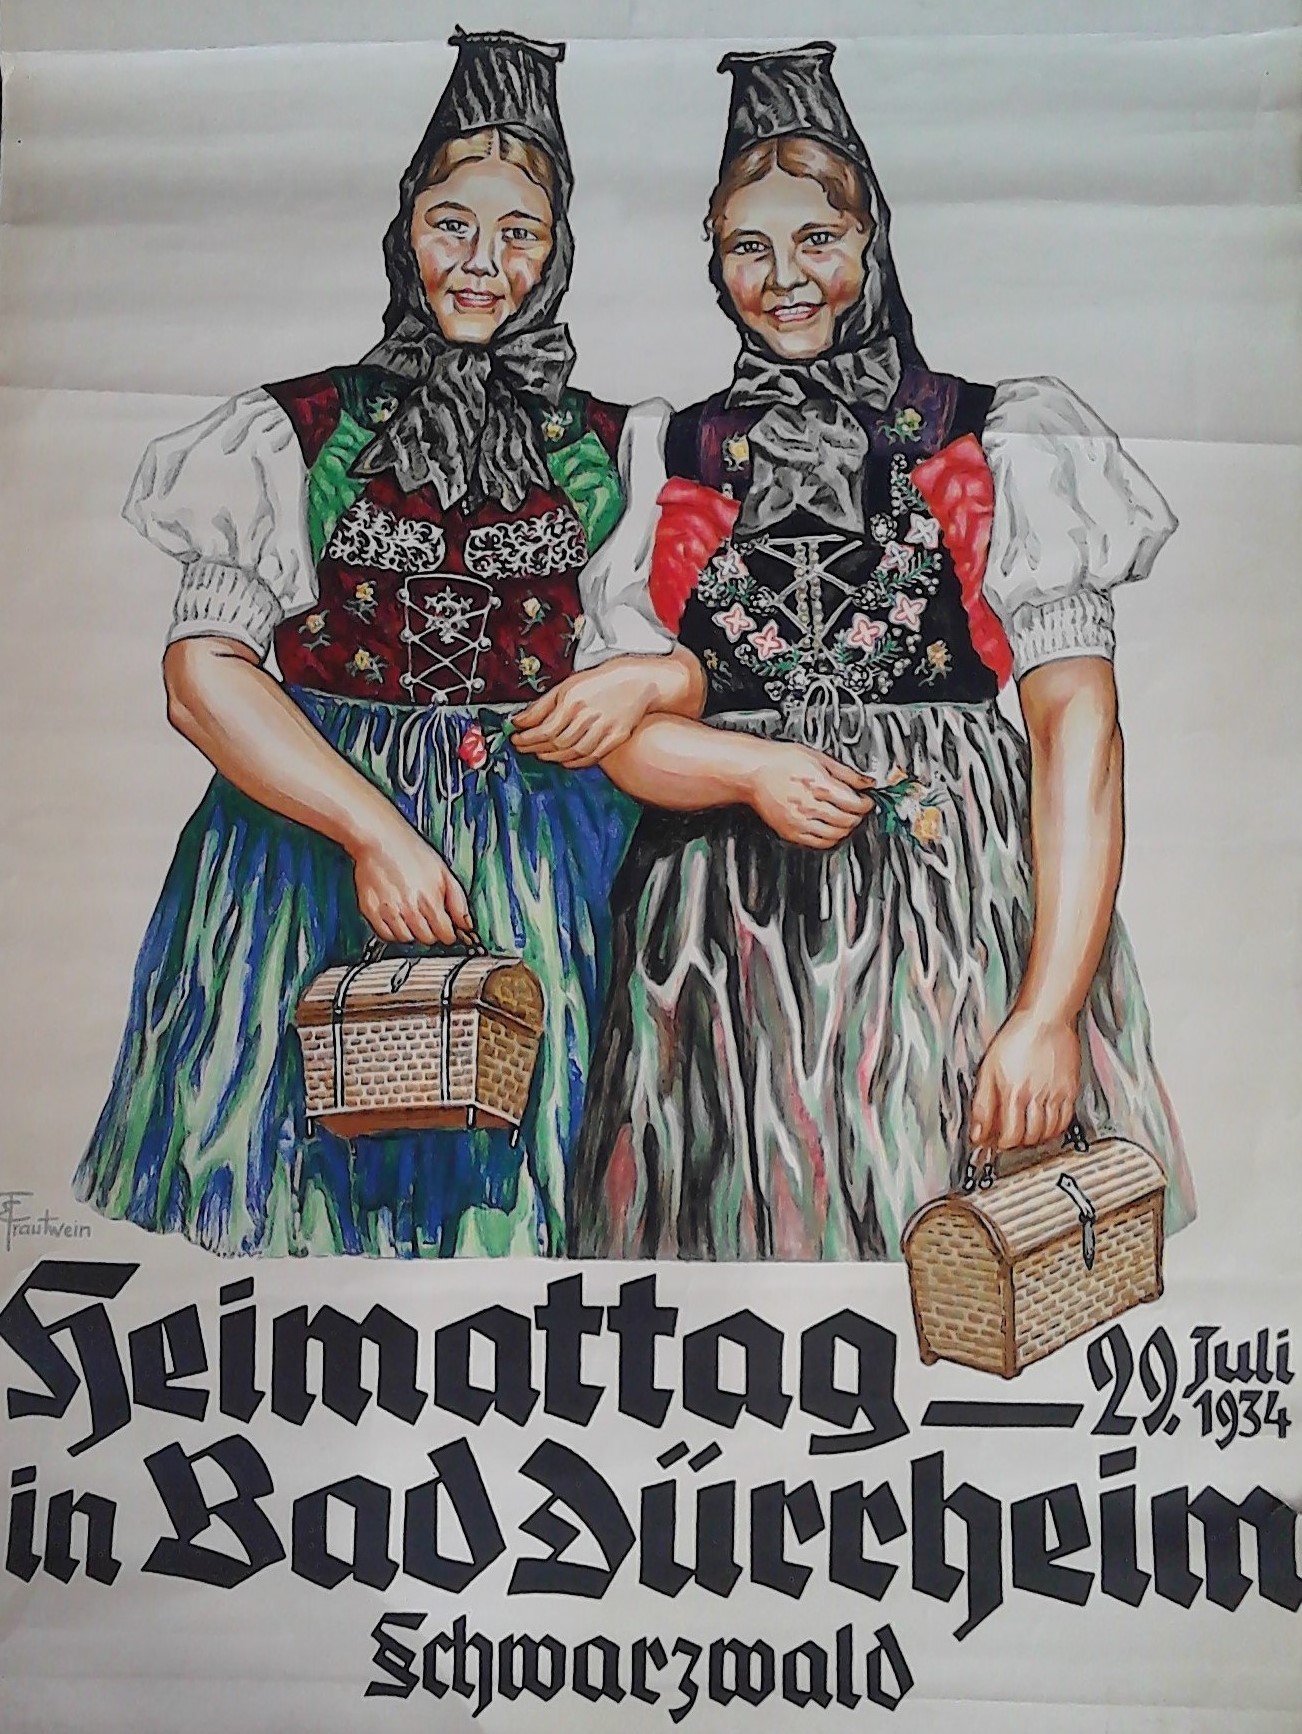 Plakat "Heimattag in Bad Dürrheim Schwarzwald 29. Juli 1934" (Stadt Schiltach CC BY-NC-ND)